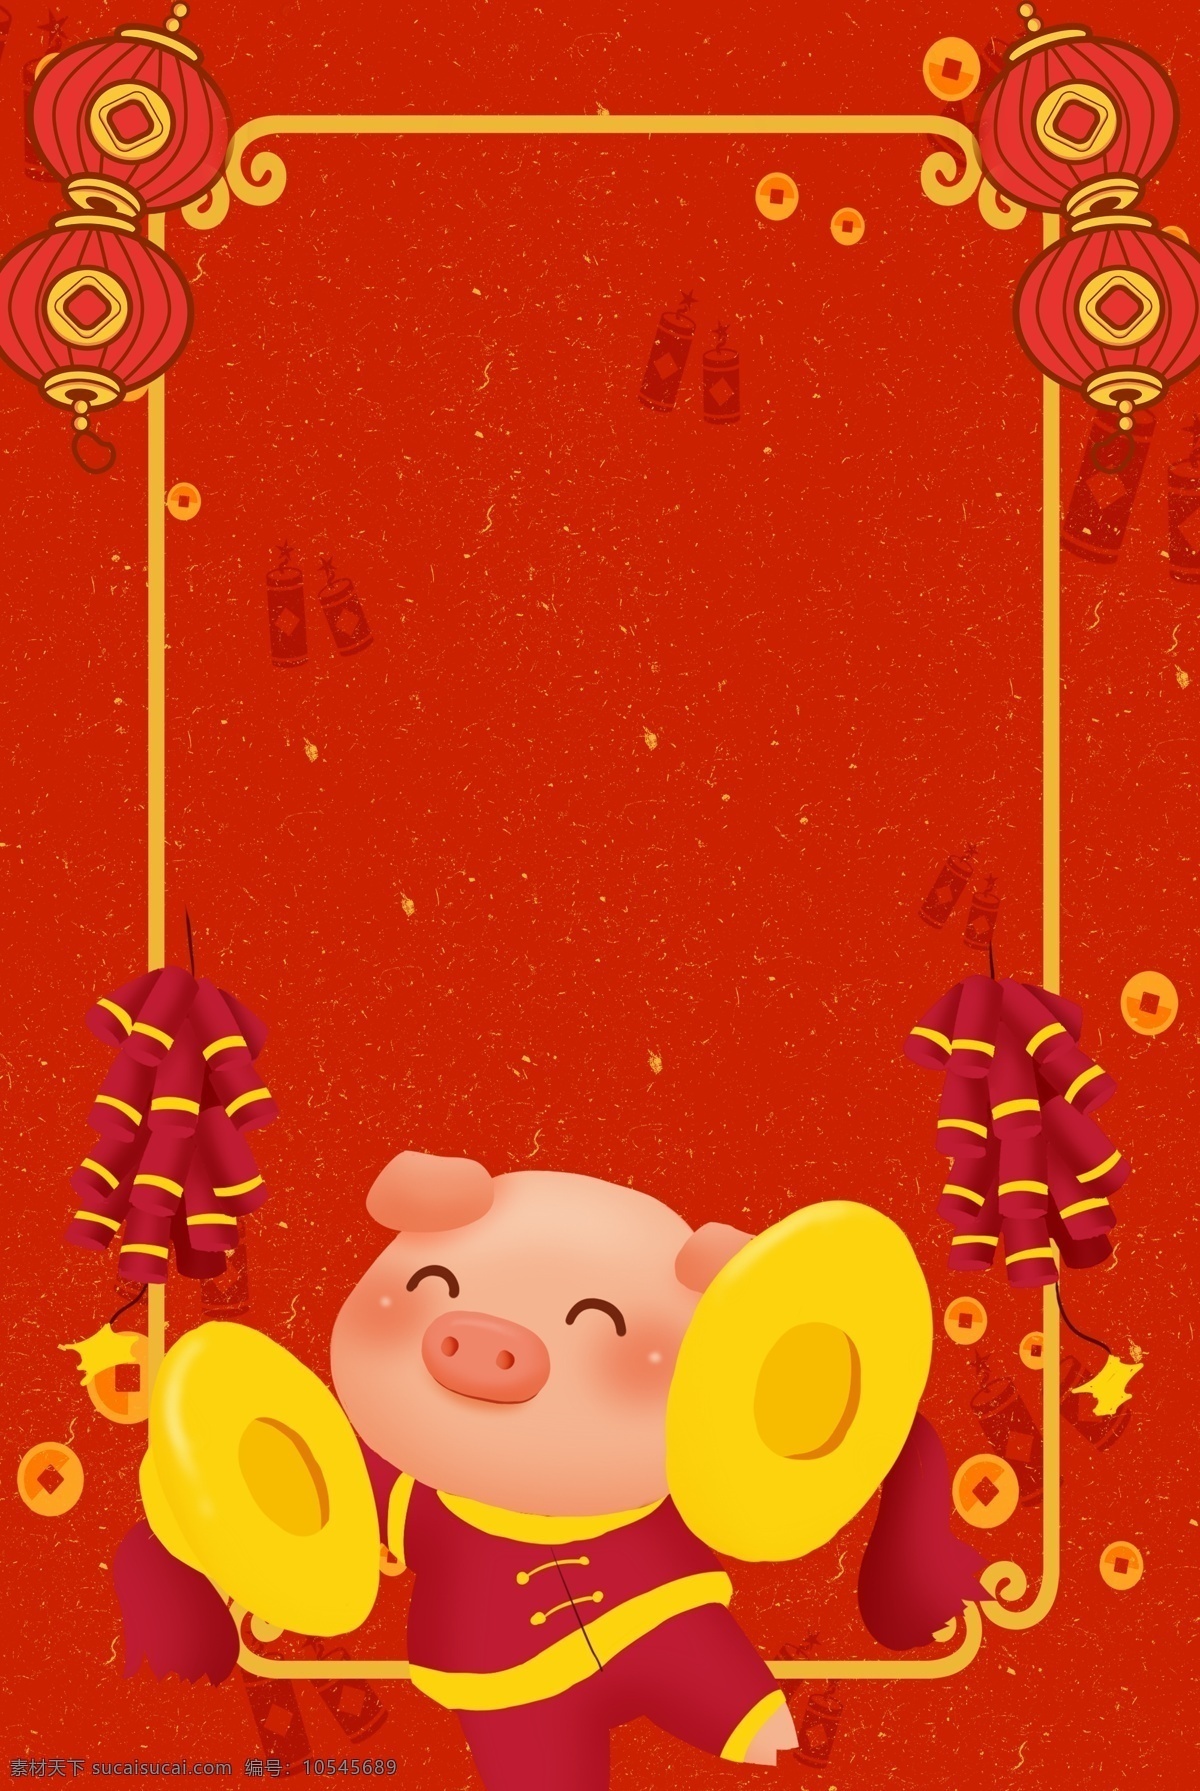 元旦 新年 2019 红色 海报 背景 跨年 猪年大吉 鞭炮 灯笼 中国风 猪年海报 新春 迎接新年